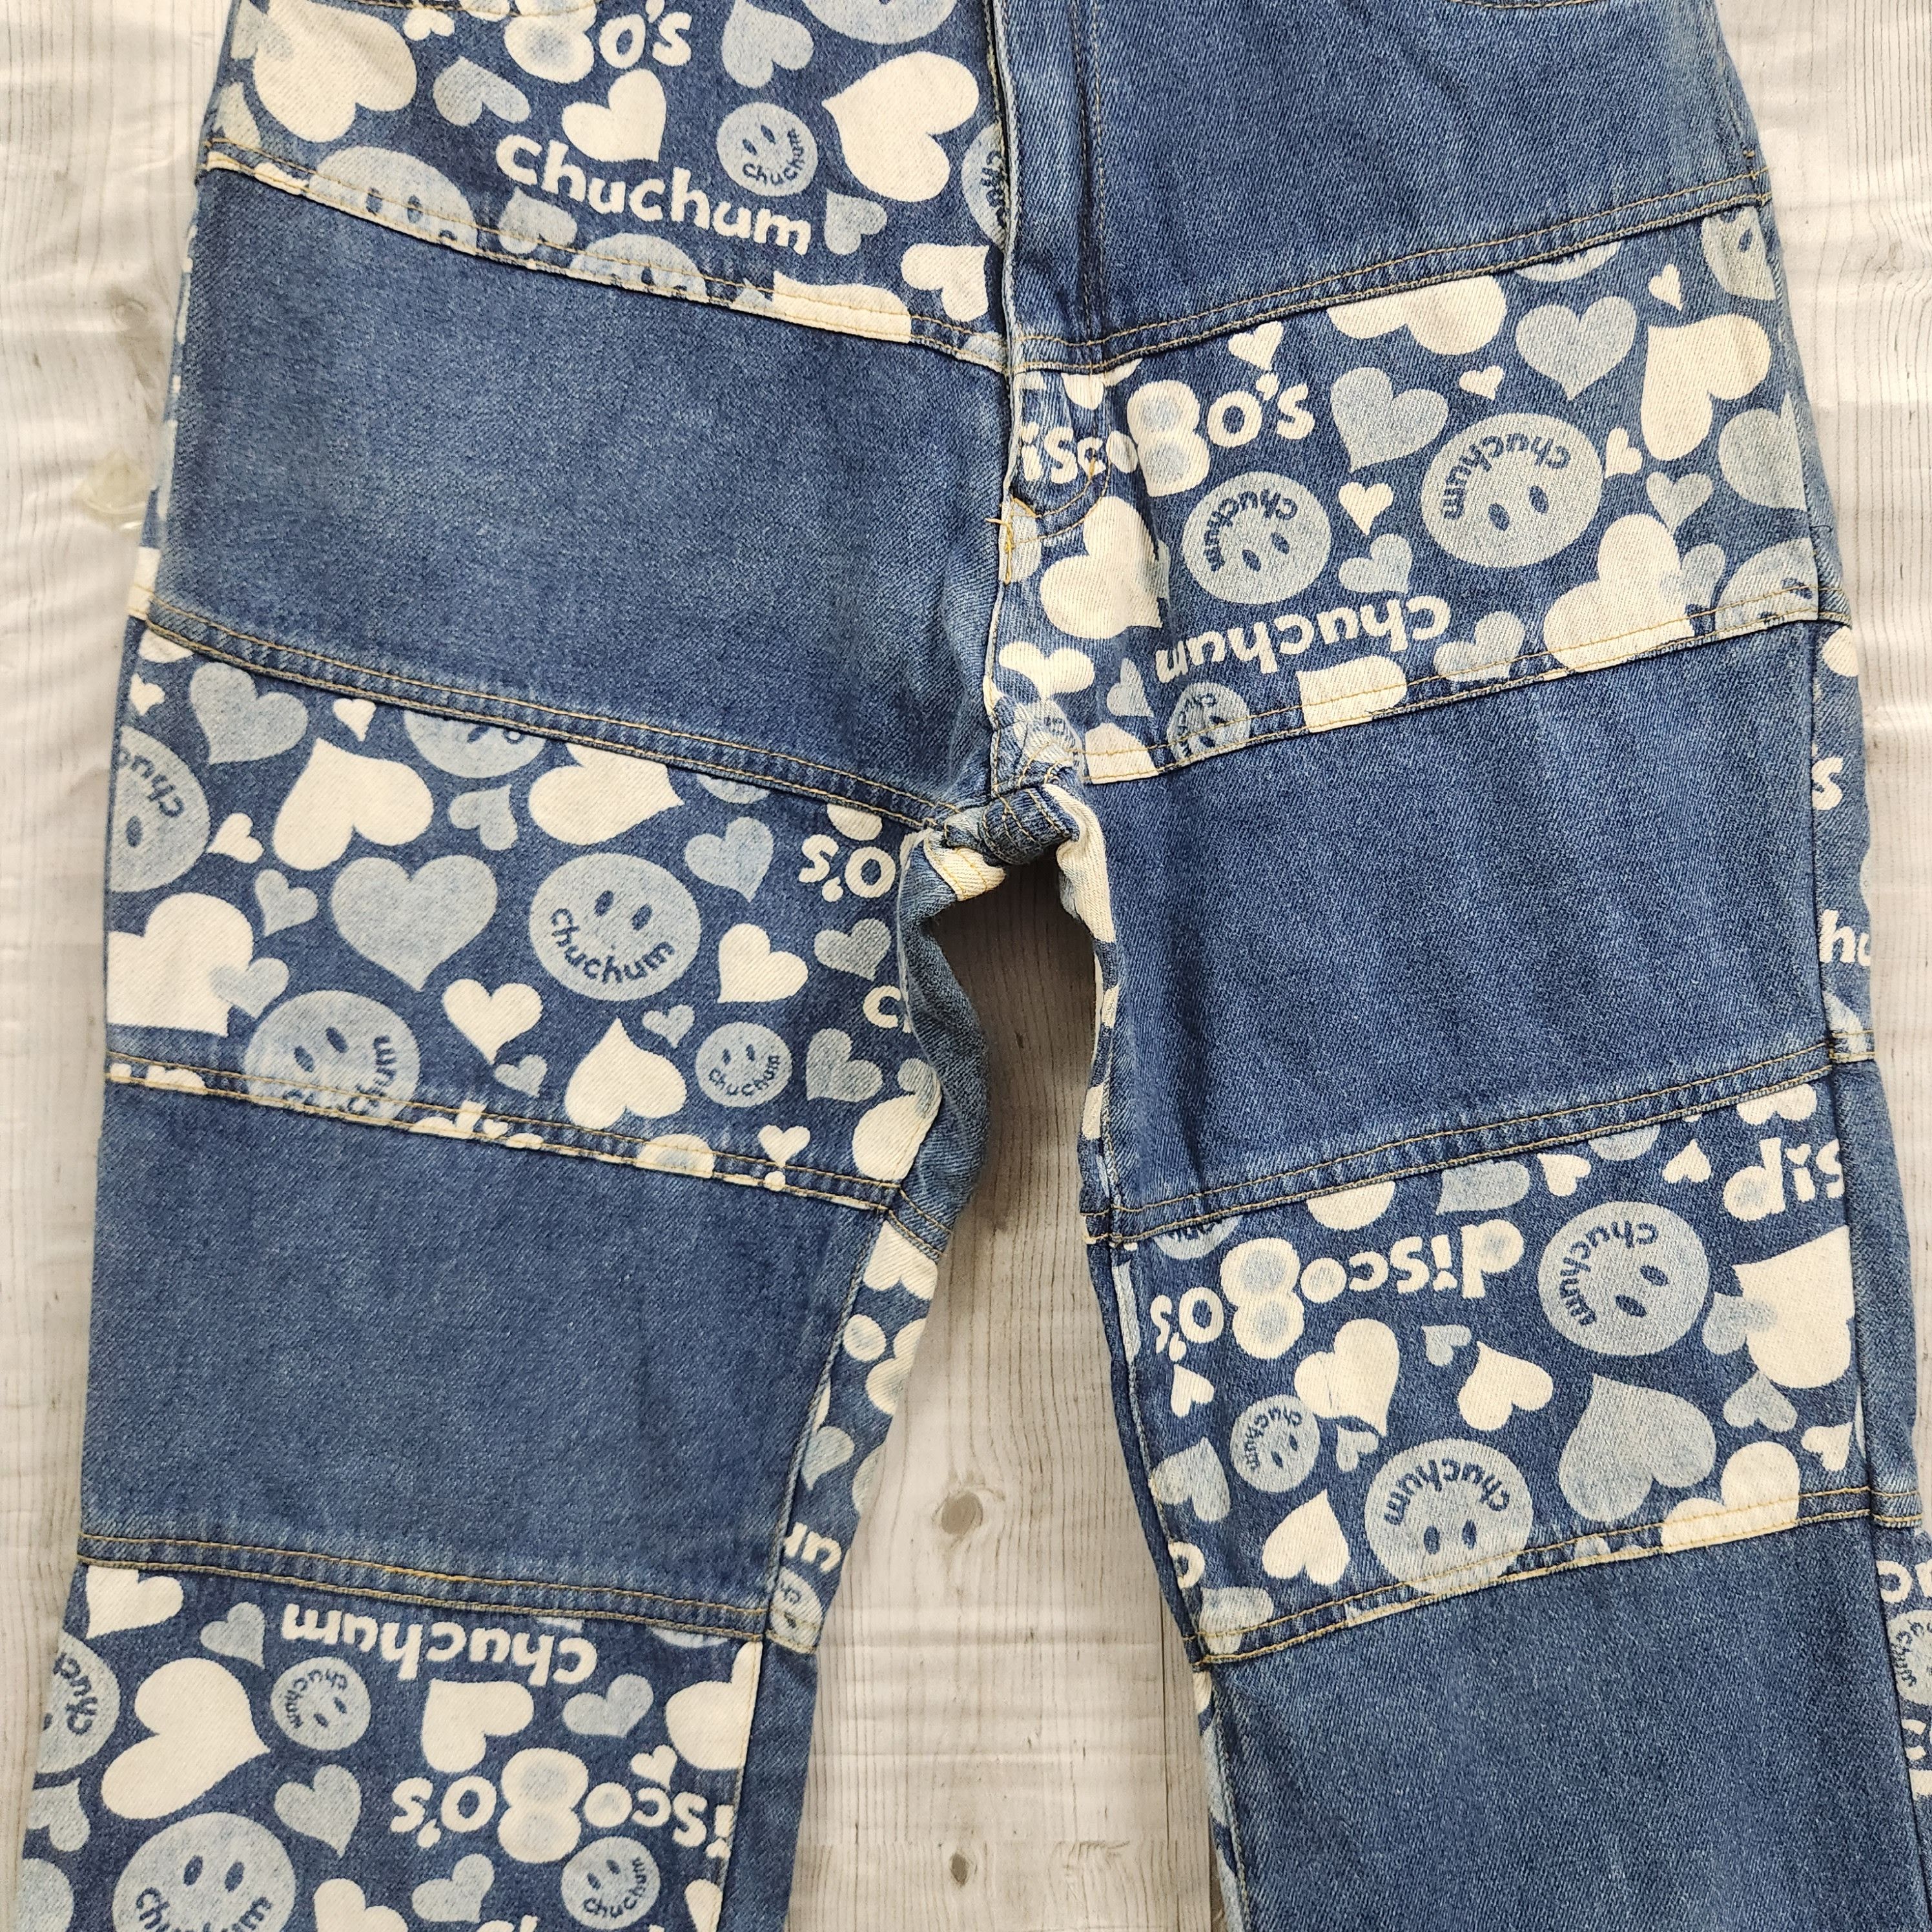 Disco 80s Chuchum Patches Denim Vintage Jeans Japan - 5